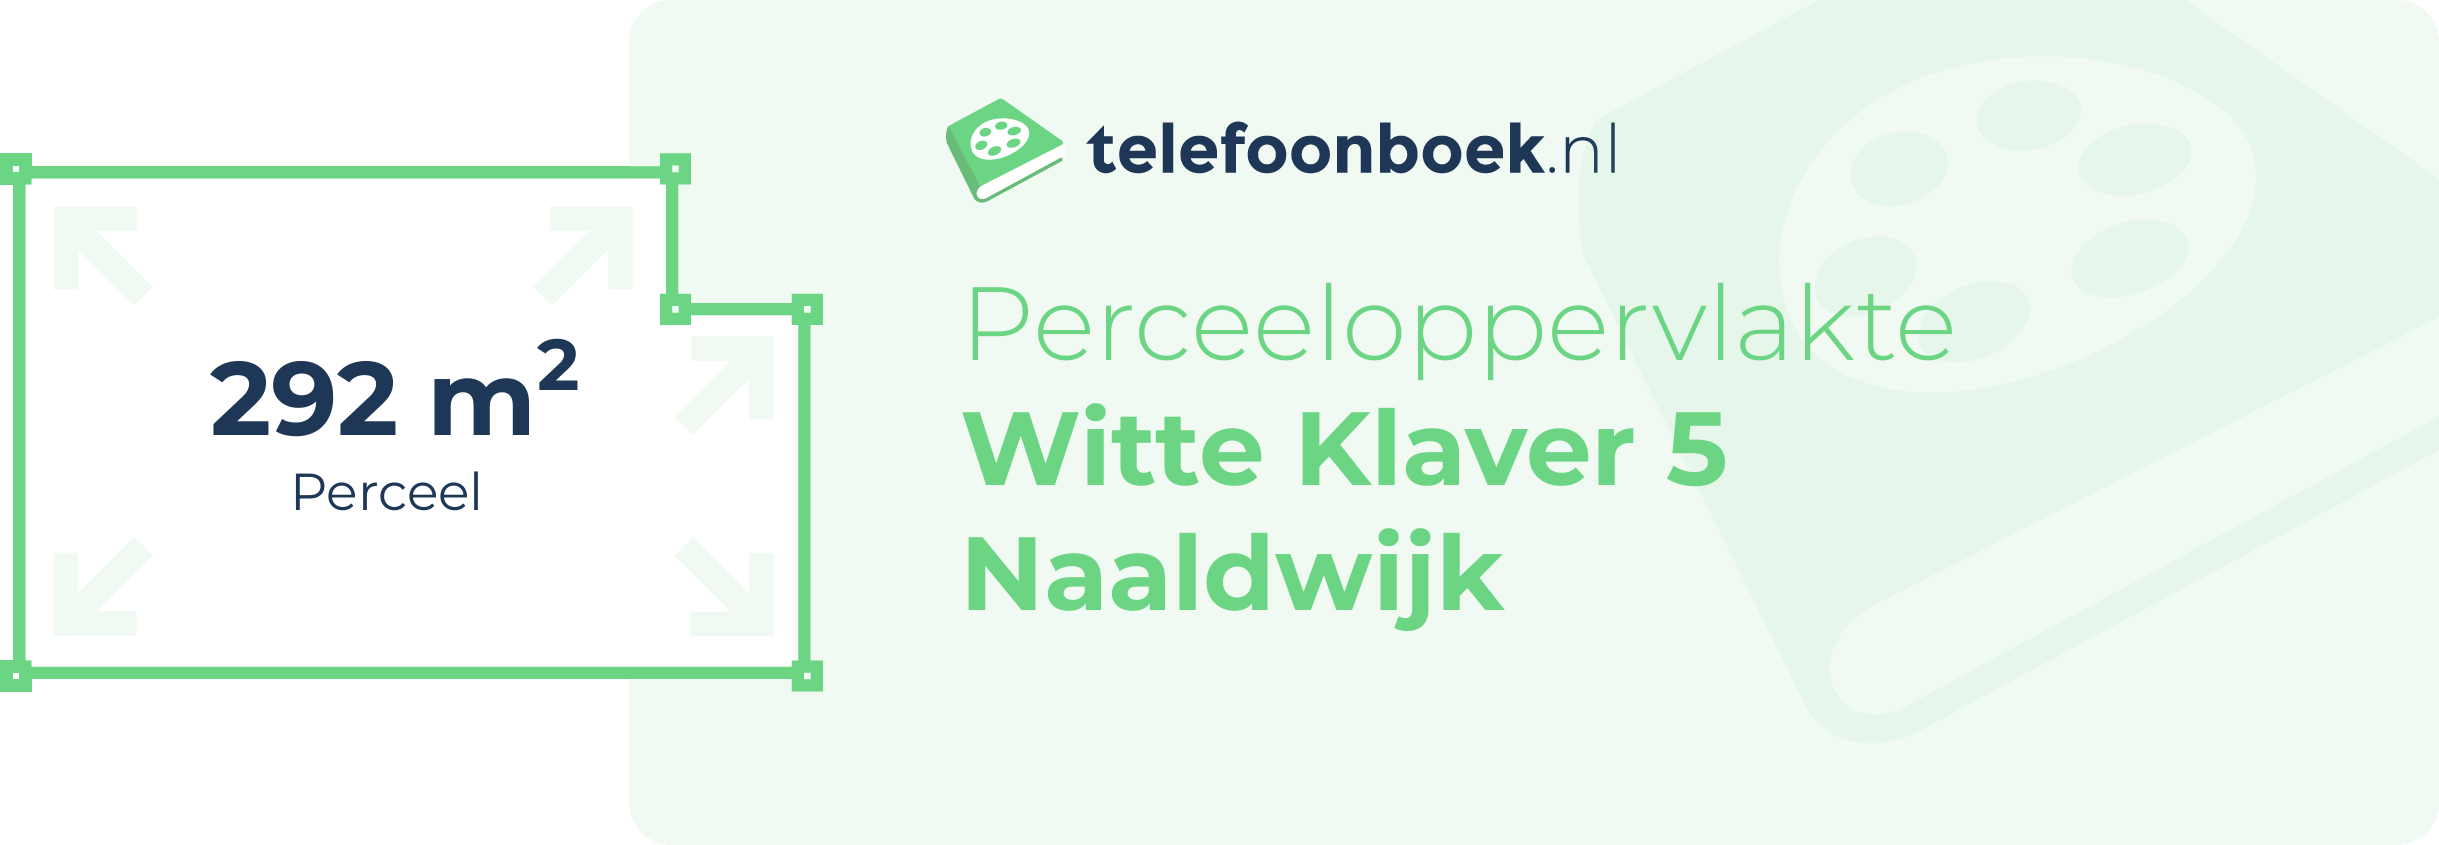 Perceeloppervlakte Witte Klaver 5 Naaldwijk